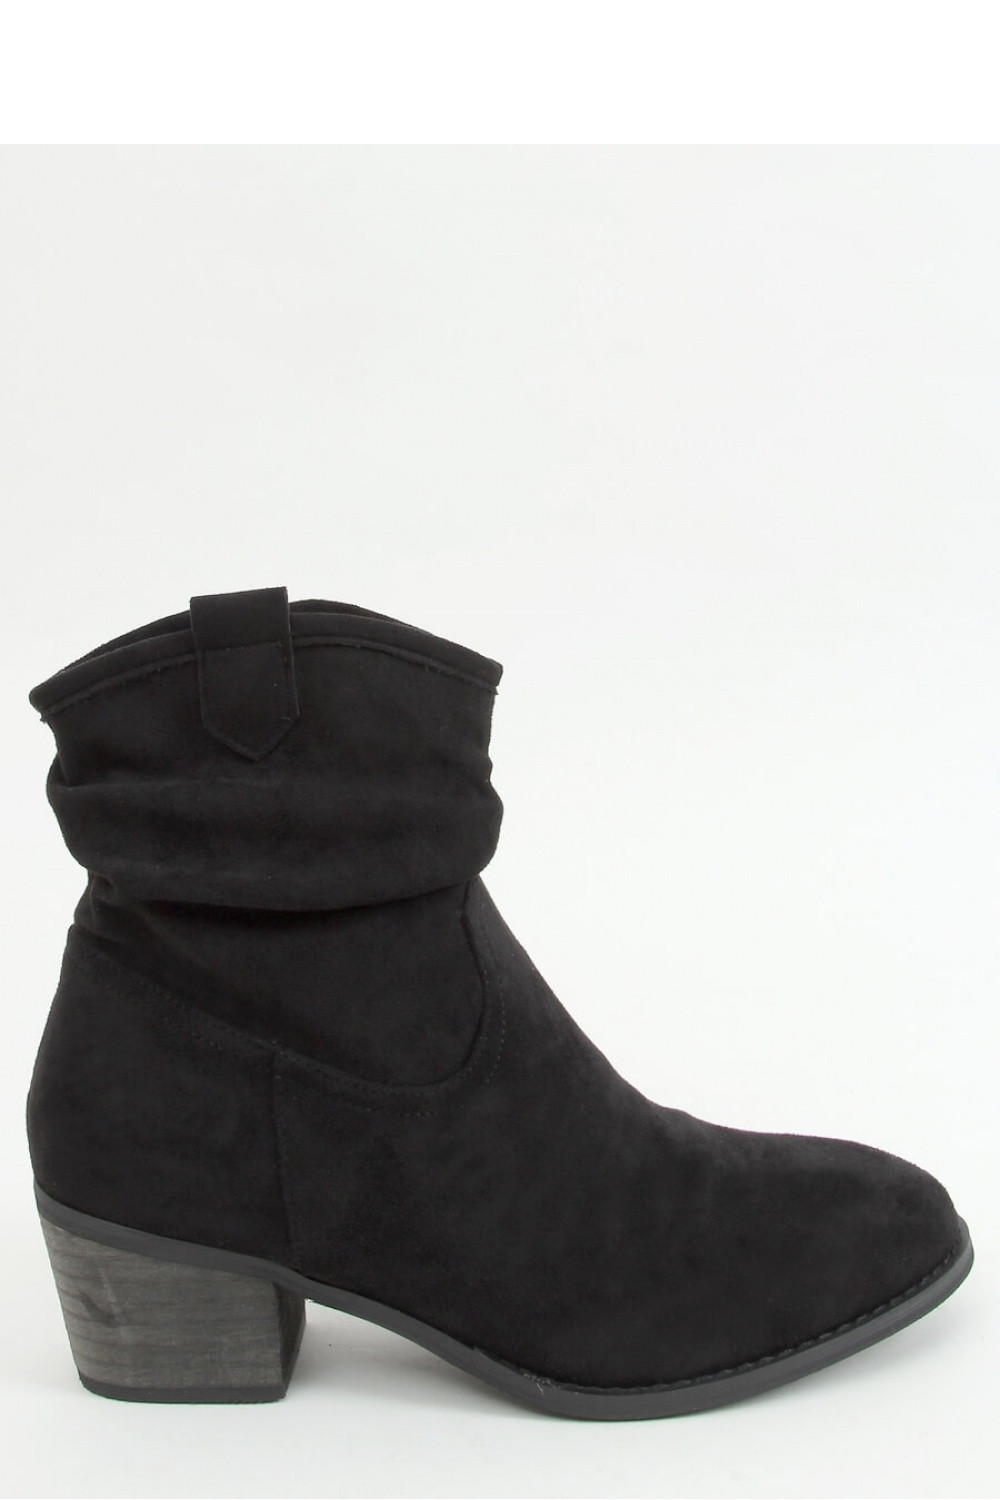 Dámské kotníkové boty na podpatku Z1165 - Inello černá 37